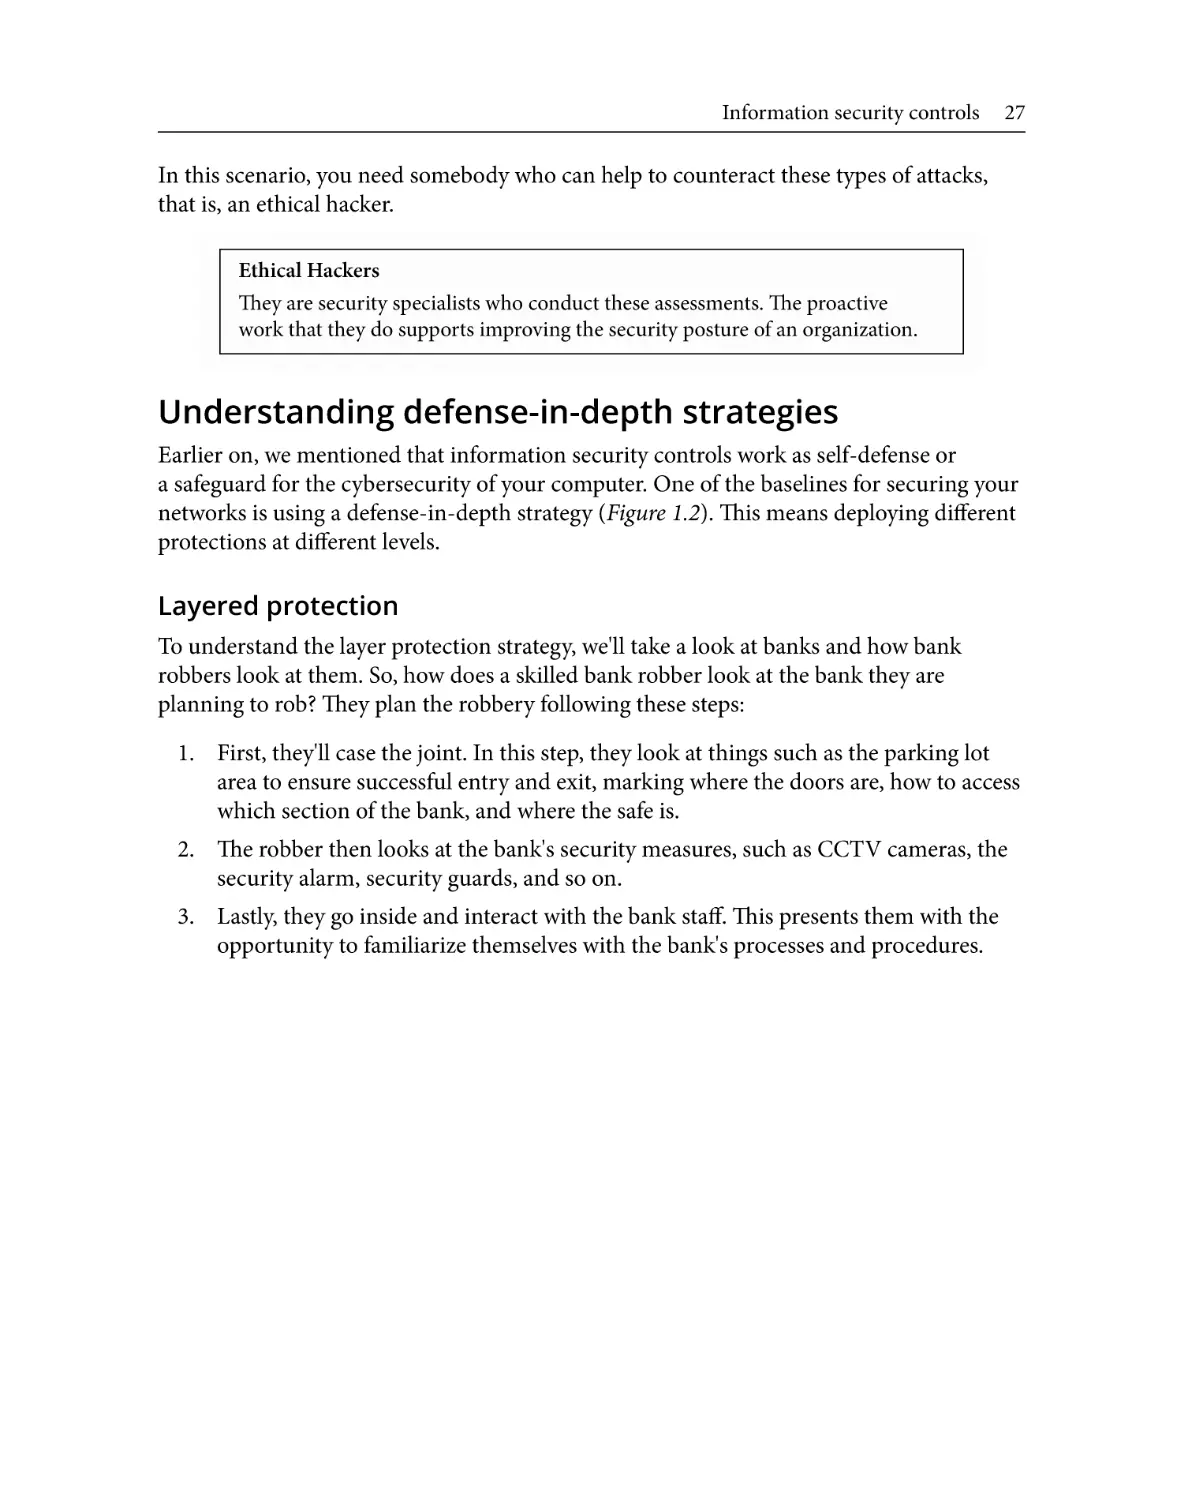 Understanding defense-in-depth strategies